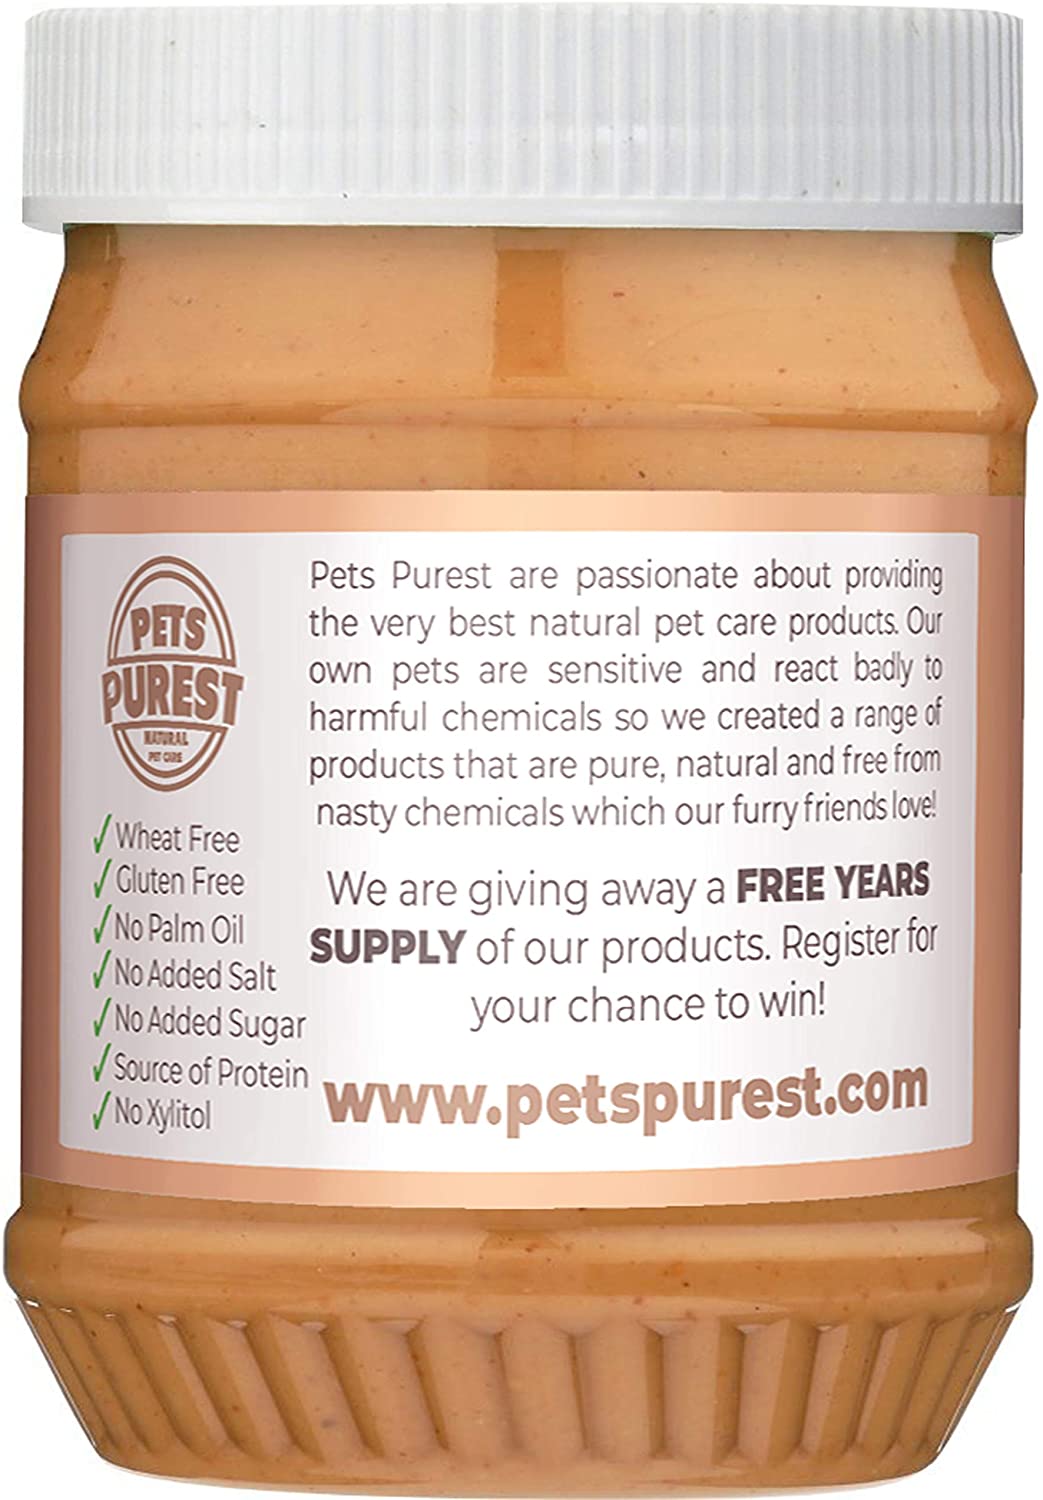  Pets Purest Manteca de maní 100% Natural para Perros (sin azúcar agregada, Sal o xilitol) sin Aceite de Palma, Trigo y Gluten (Fuente Saludable de proteínas) 